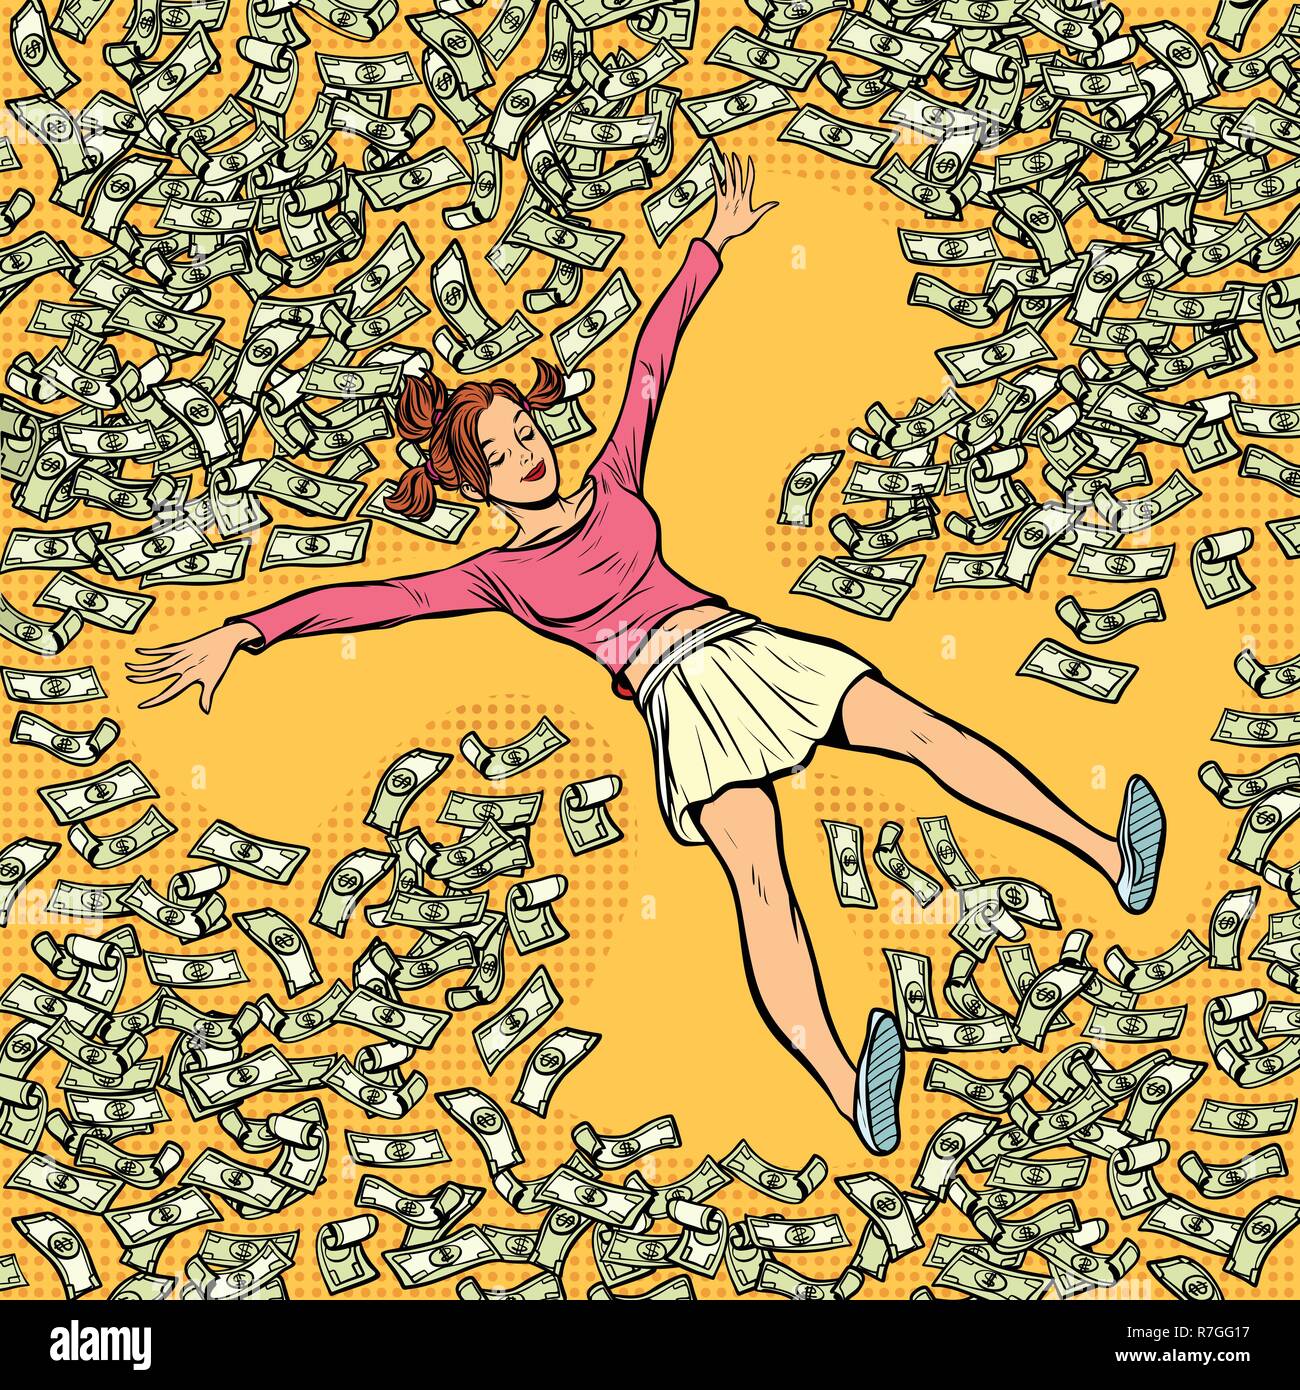 Joven ángel de nieve hace dinero dólares mucho. Comic cartoon pop art retro dibujo ilustración vectorial Ilustración del Vector